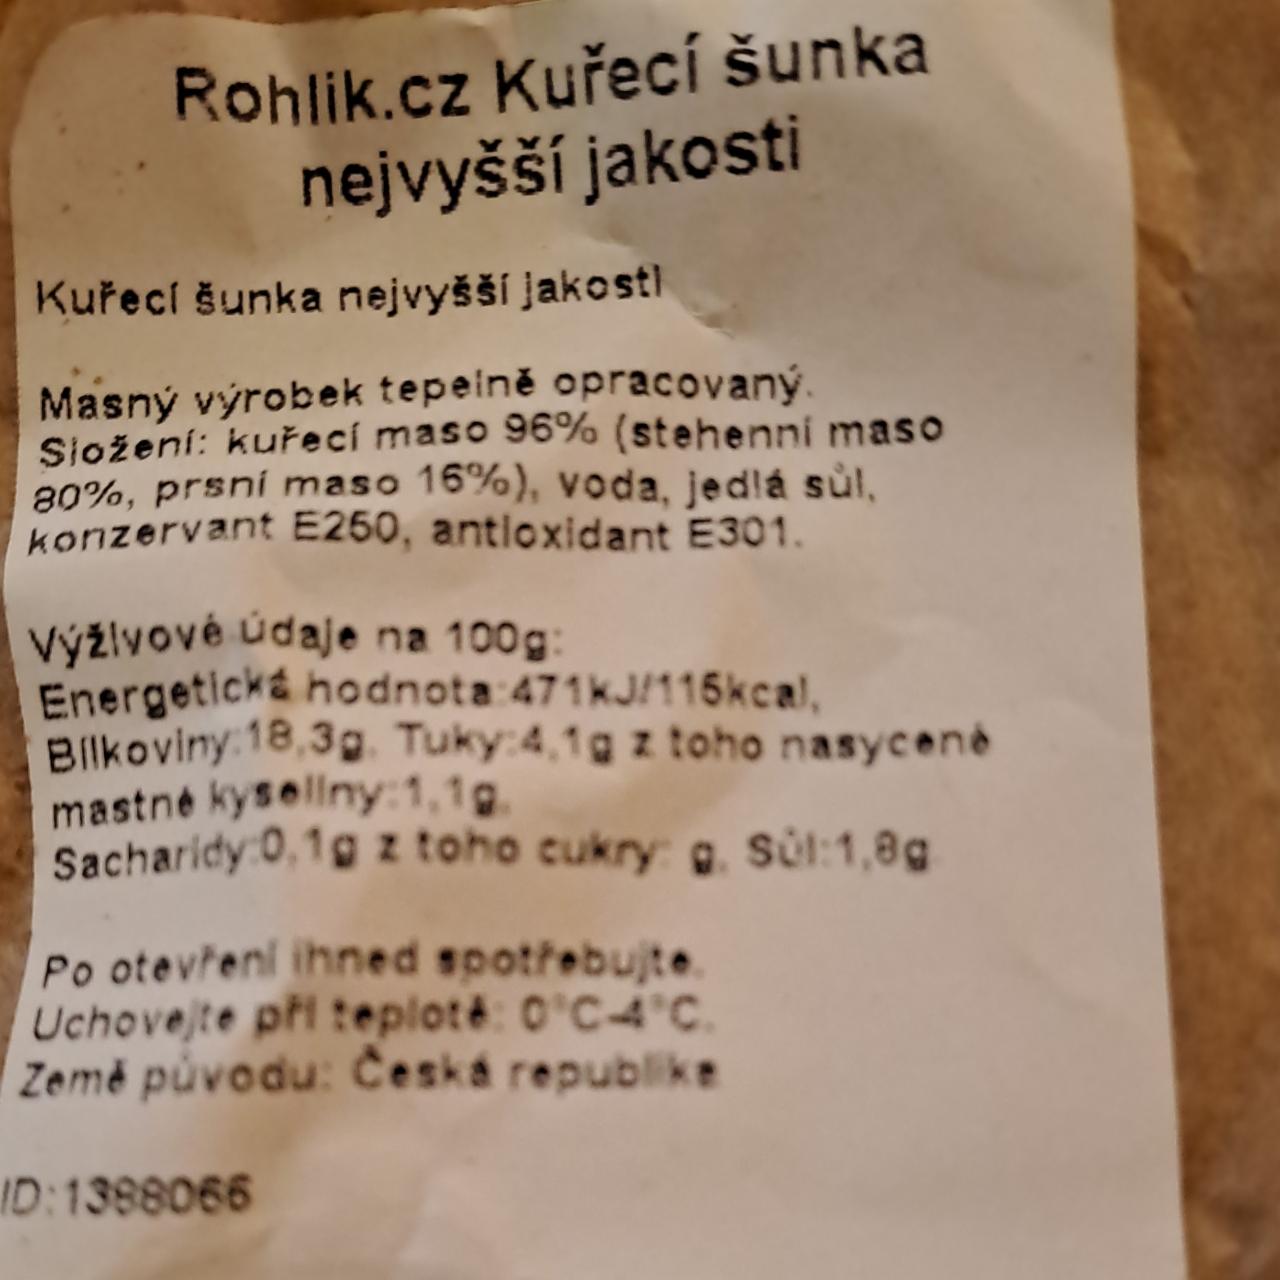 Fotografie - Kuřecí šunka nejvyšší jakosti Rohlik.cz